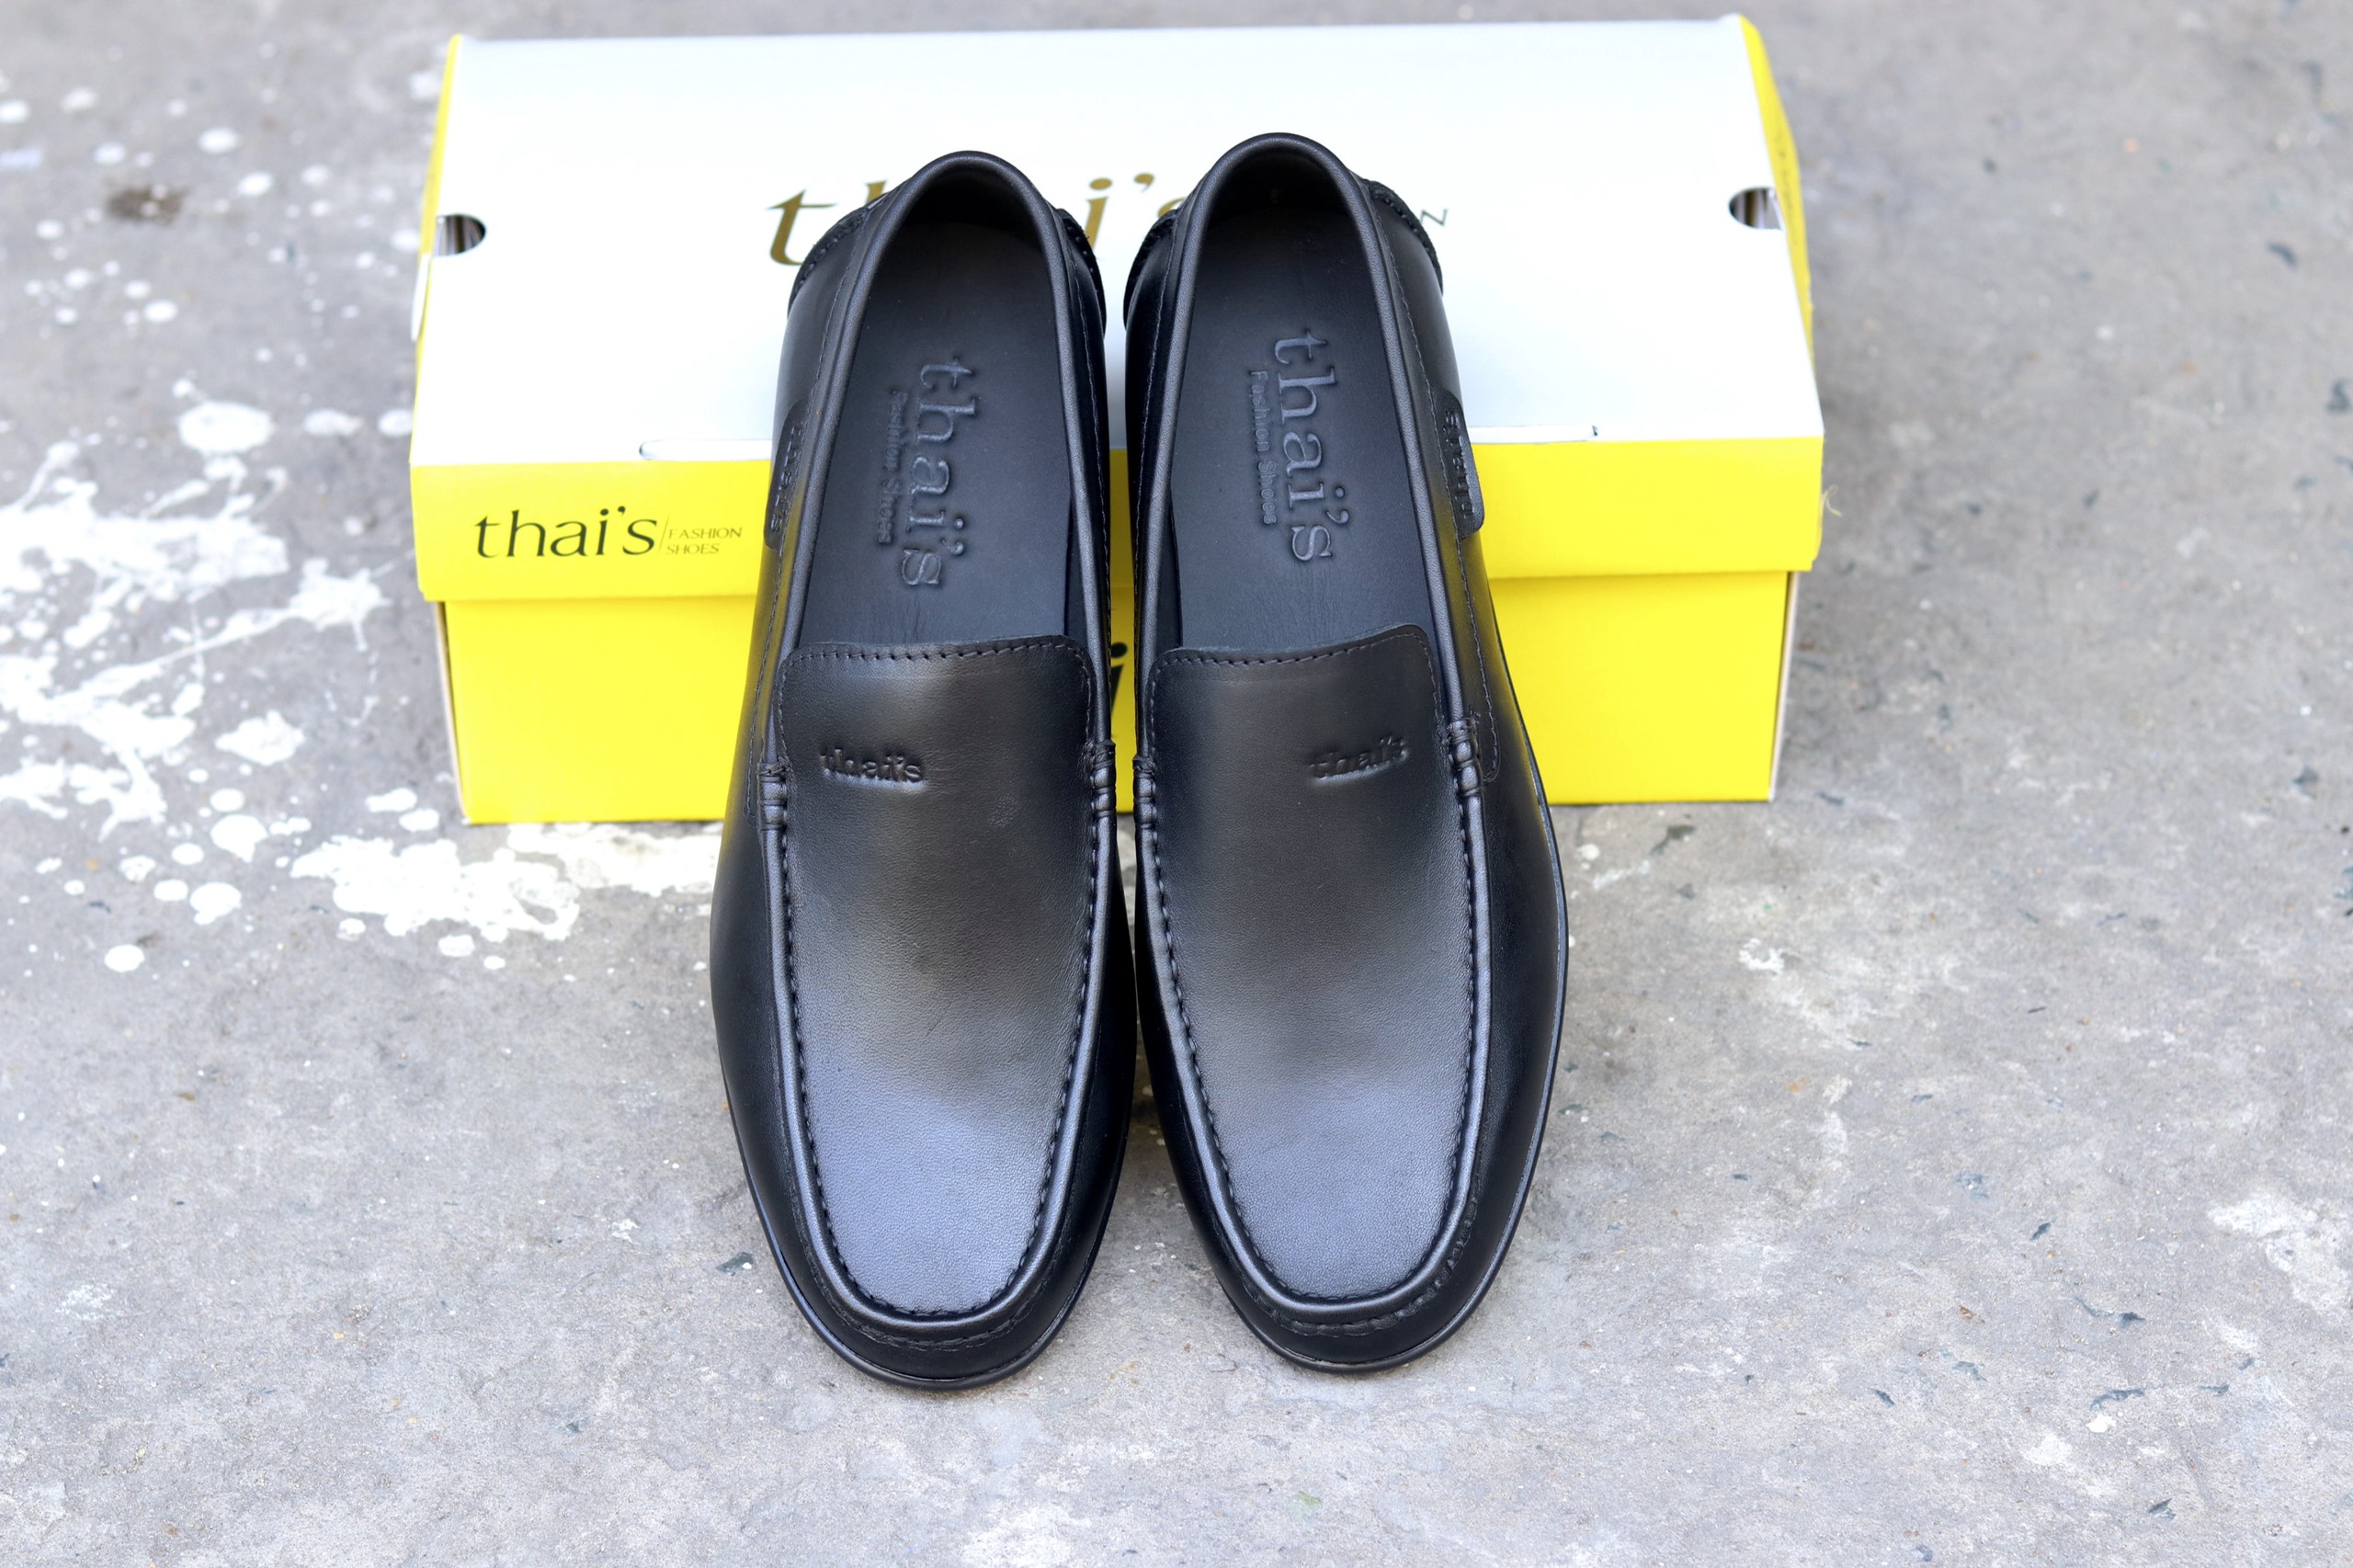 Giày da Thái Lan - giày lười nam, giày da bò thật, giày da công sở TH001